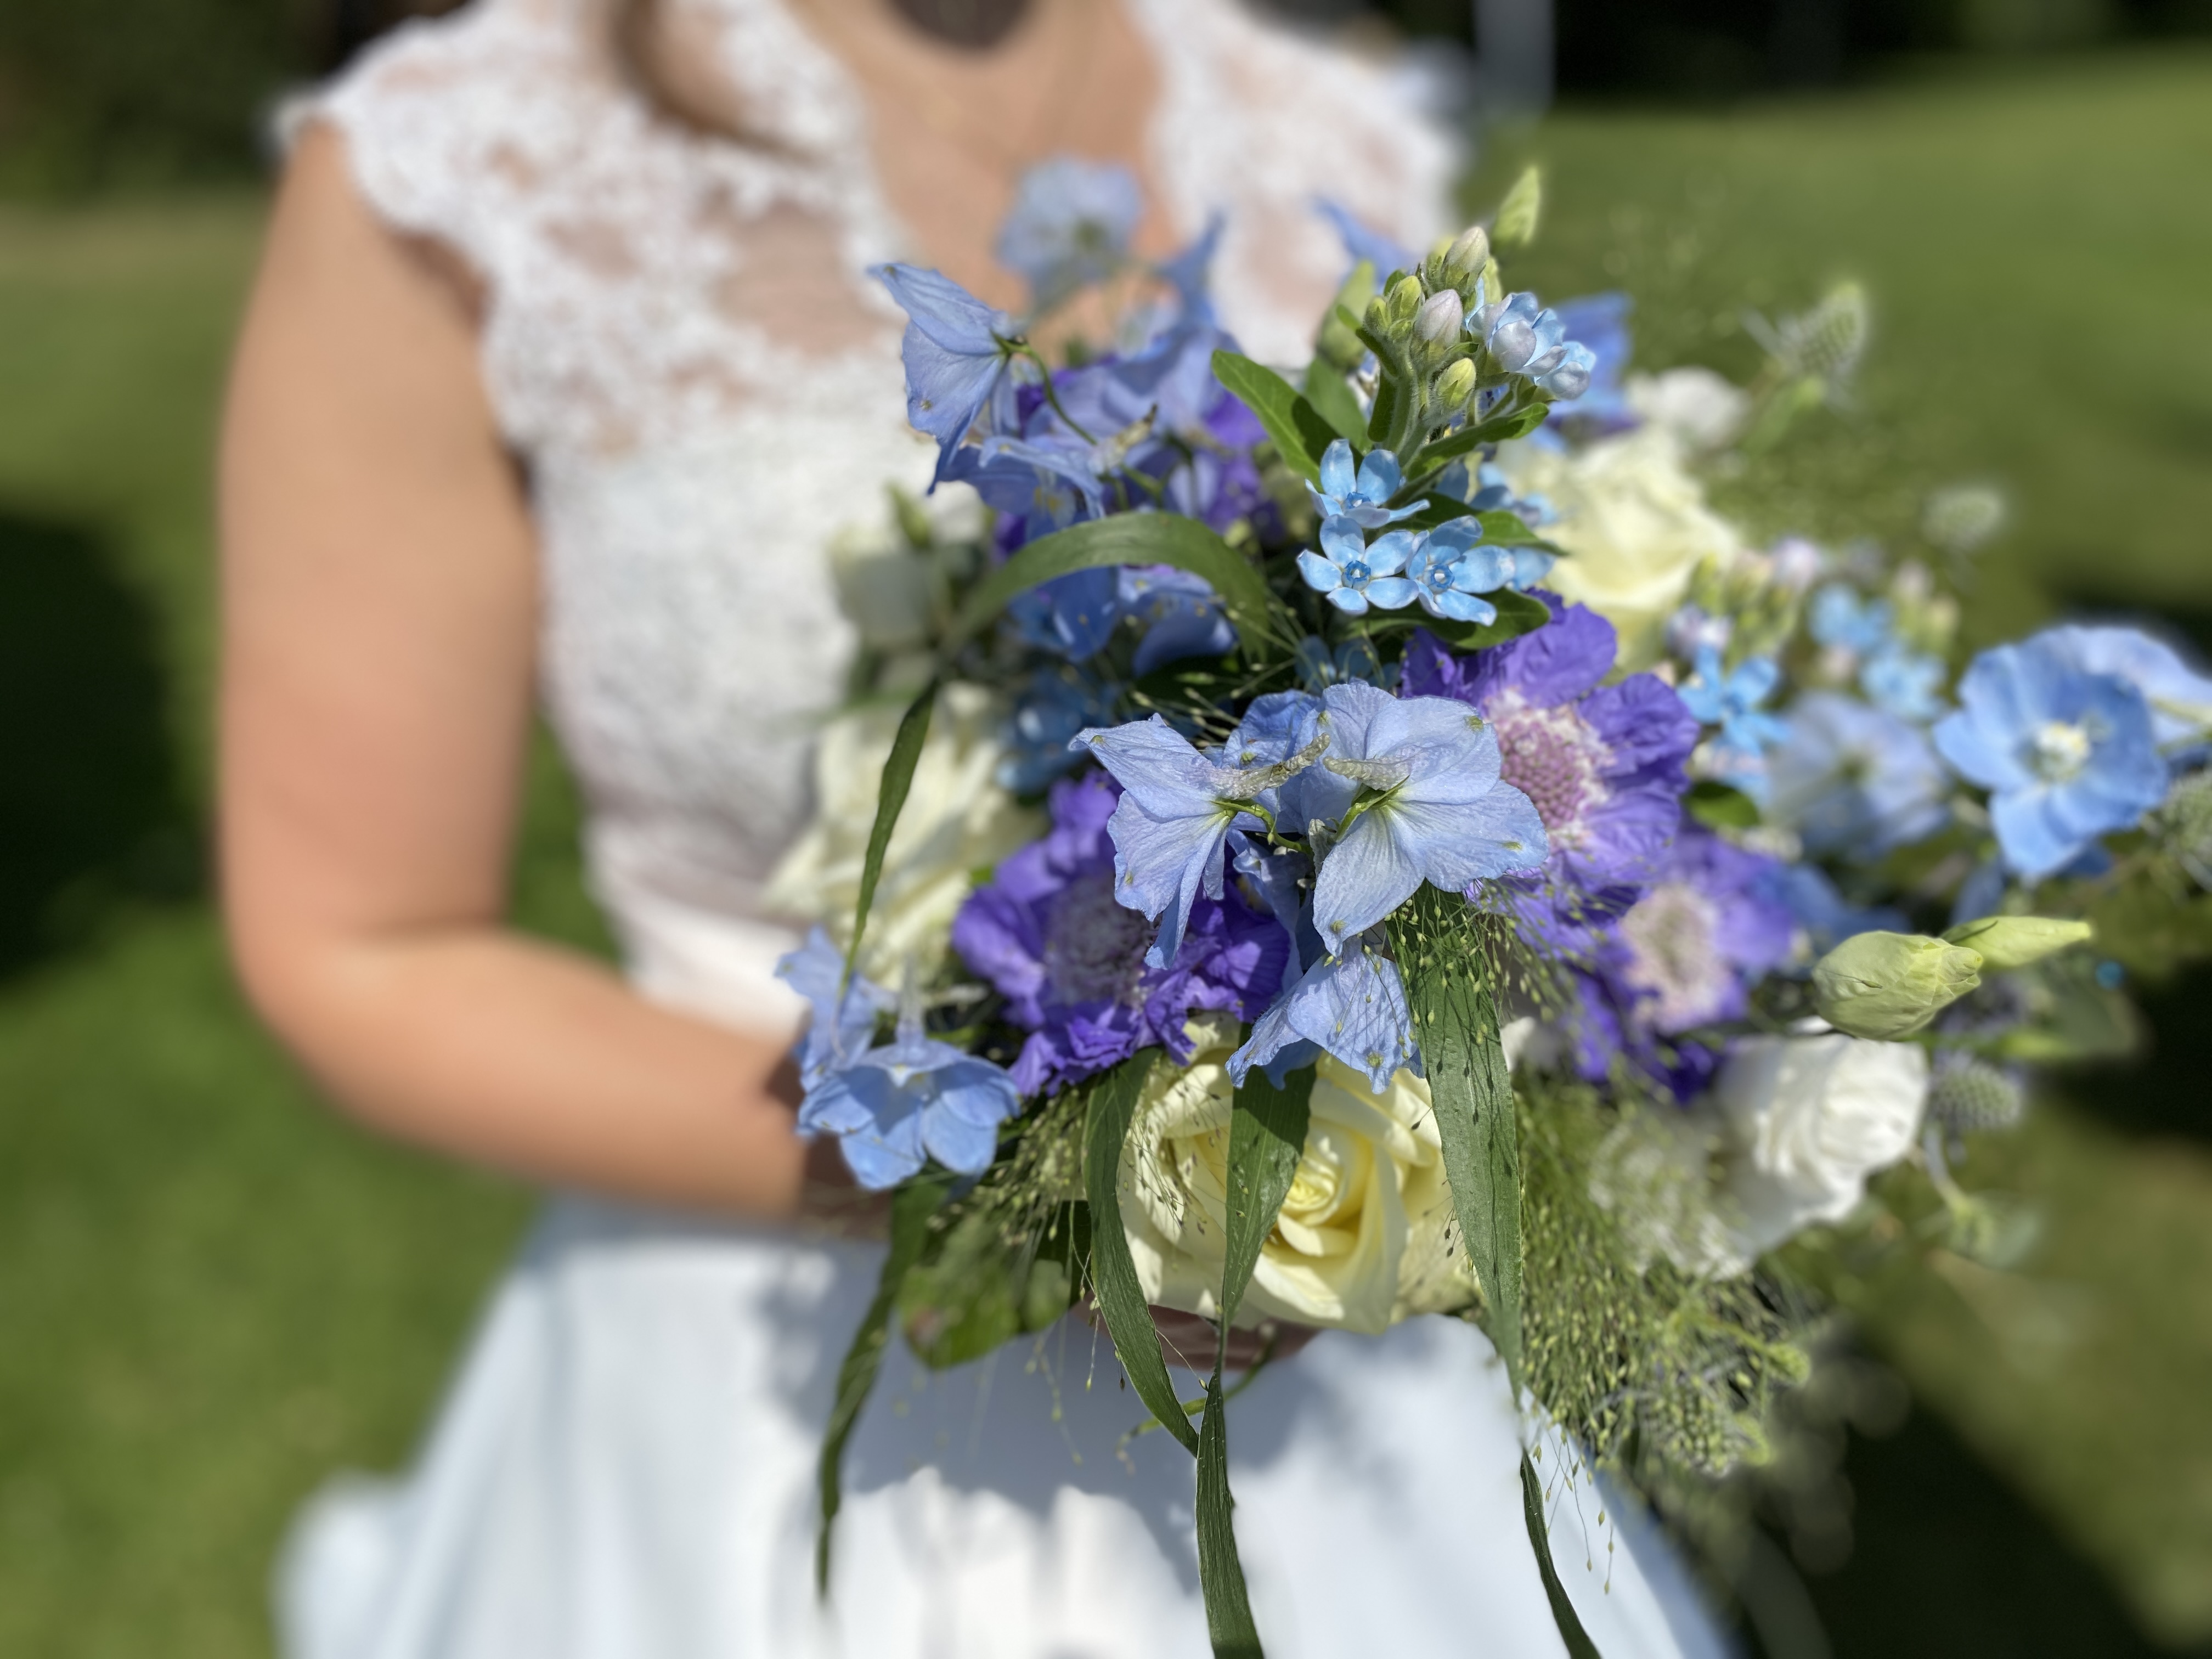 Bruidsboeket in blauw, wit